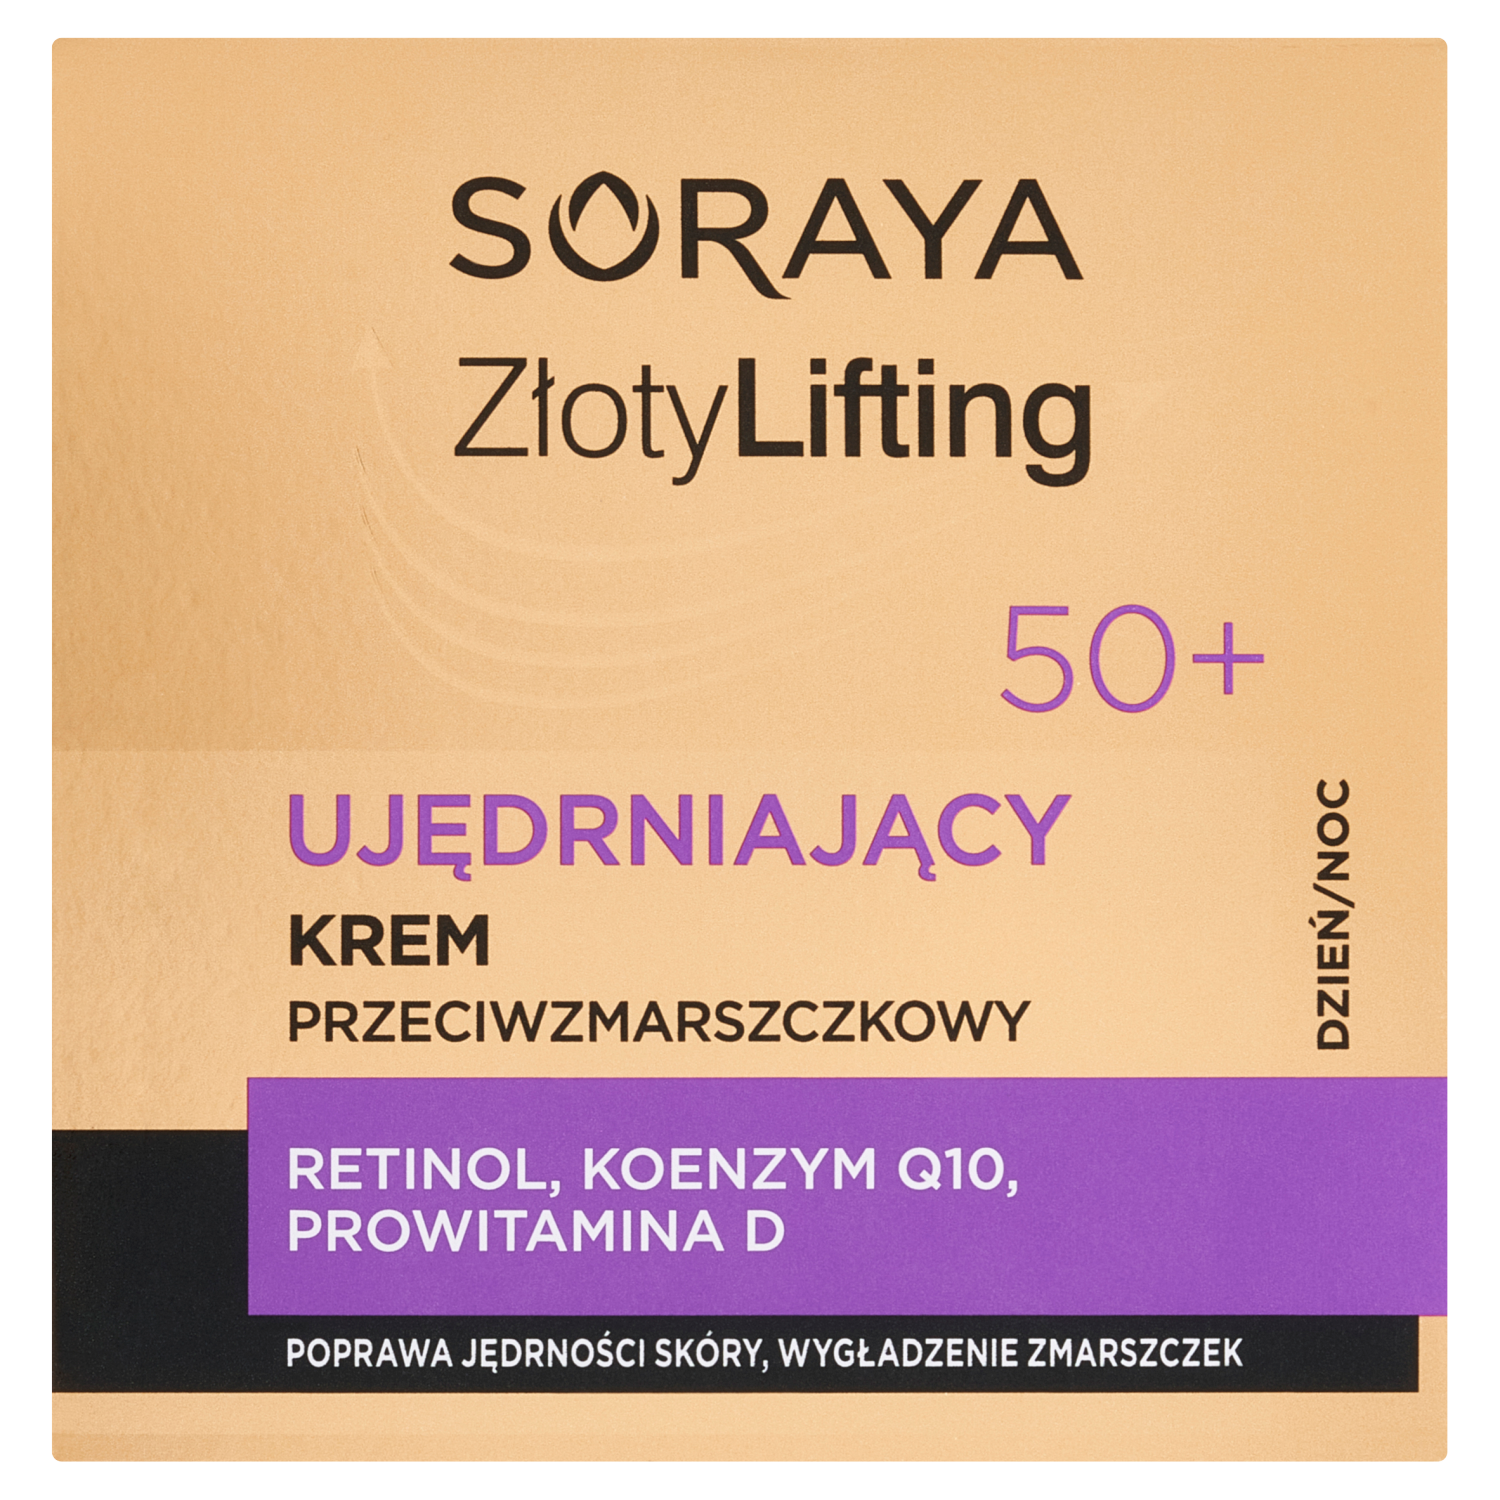 Укрепляющий крем для лица от морщин 50+ Soraya Złoty Lifting, 50 мл пешкова галина шретер александр растения в домашней косметике и дерматологии